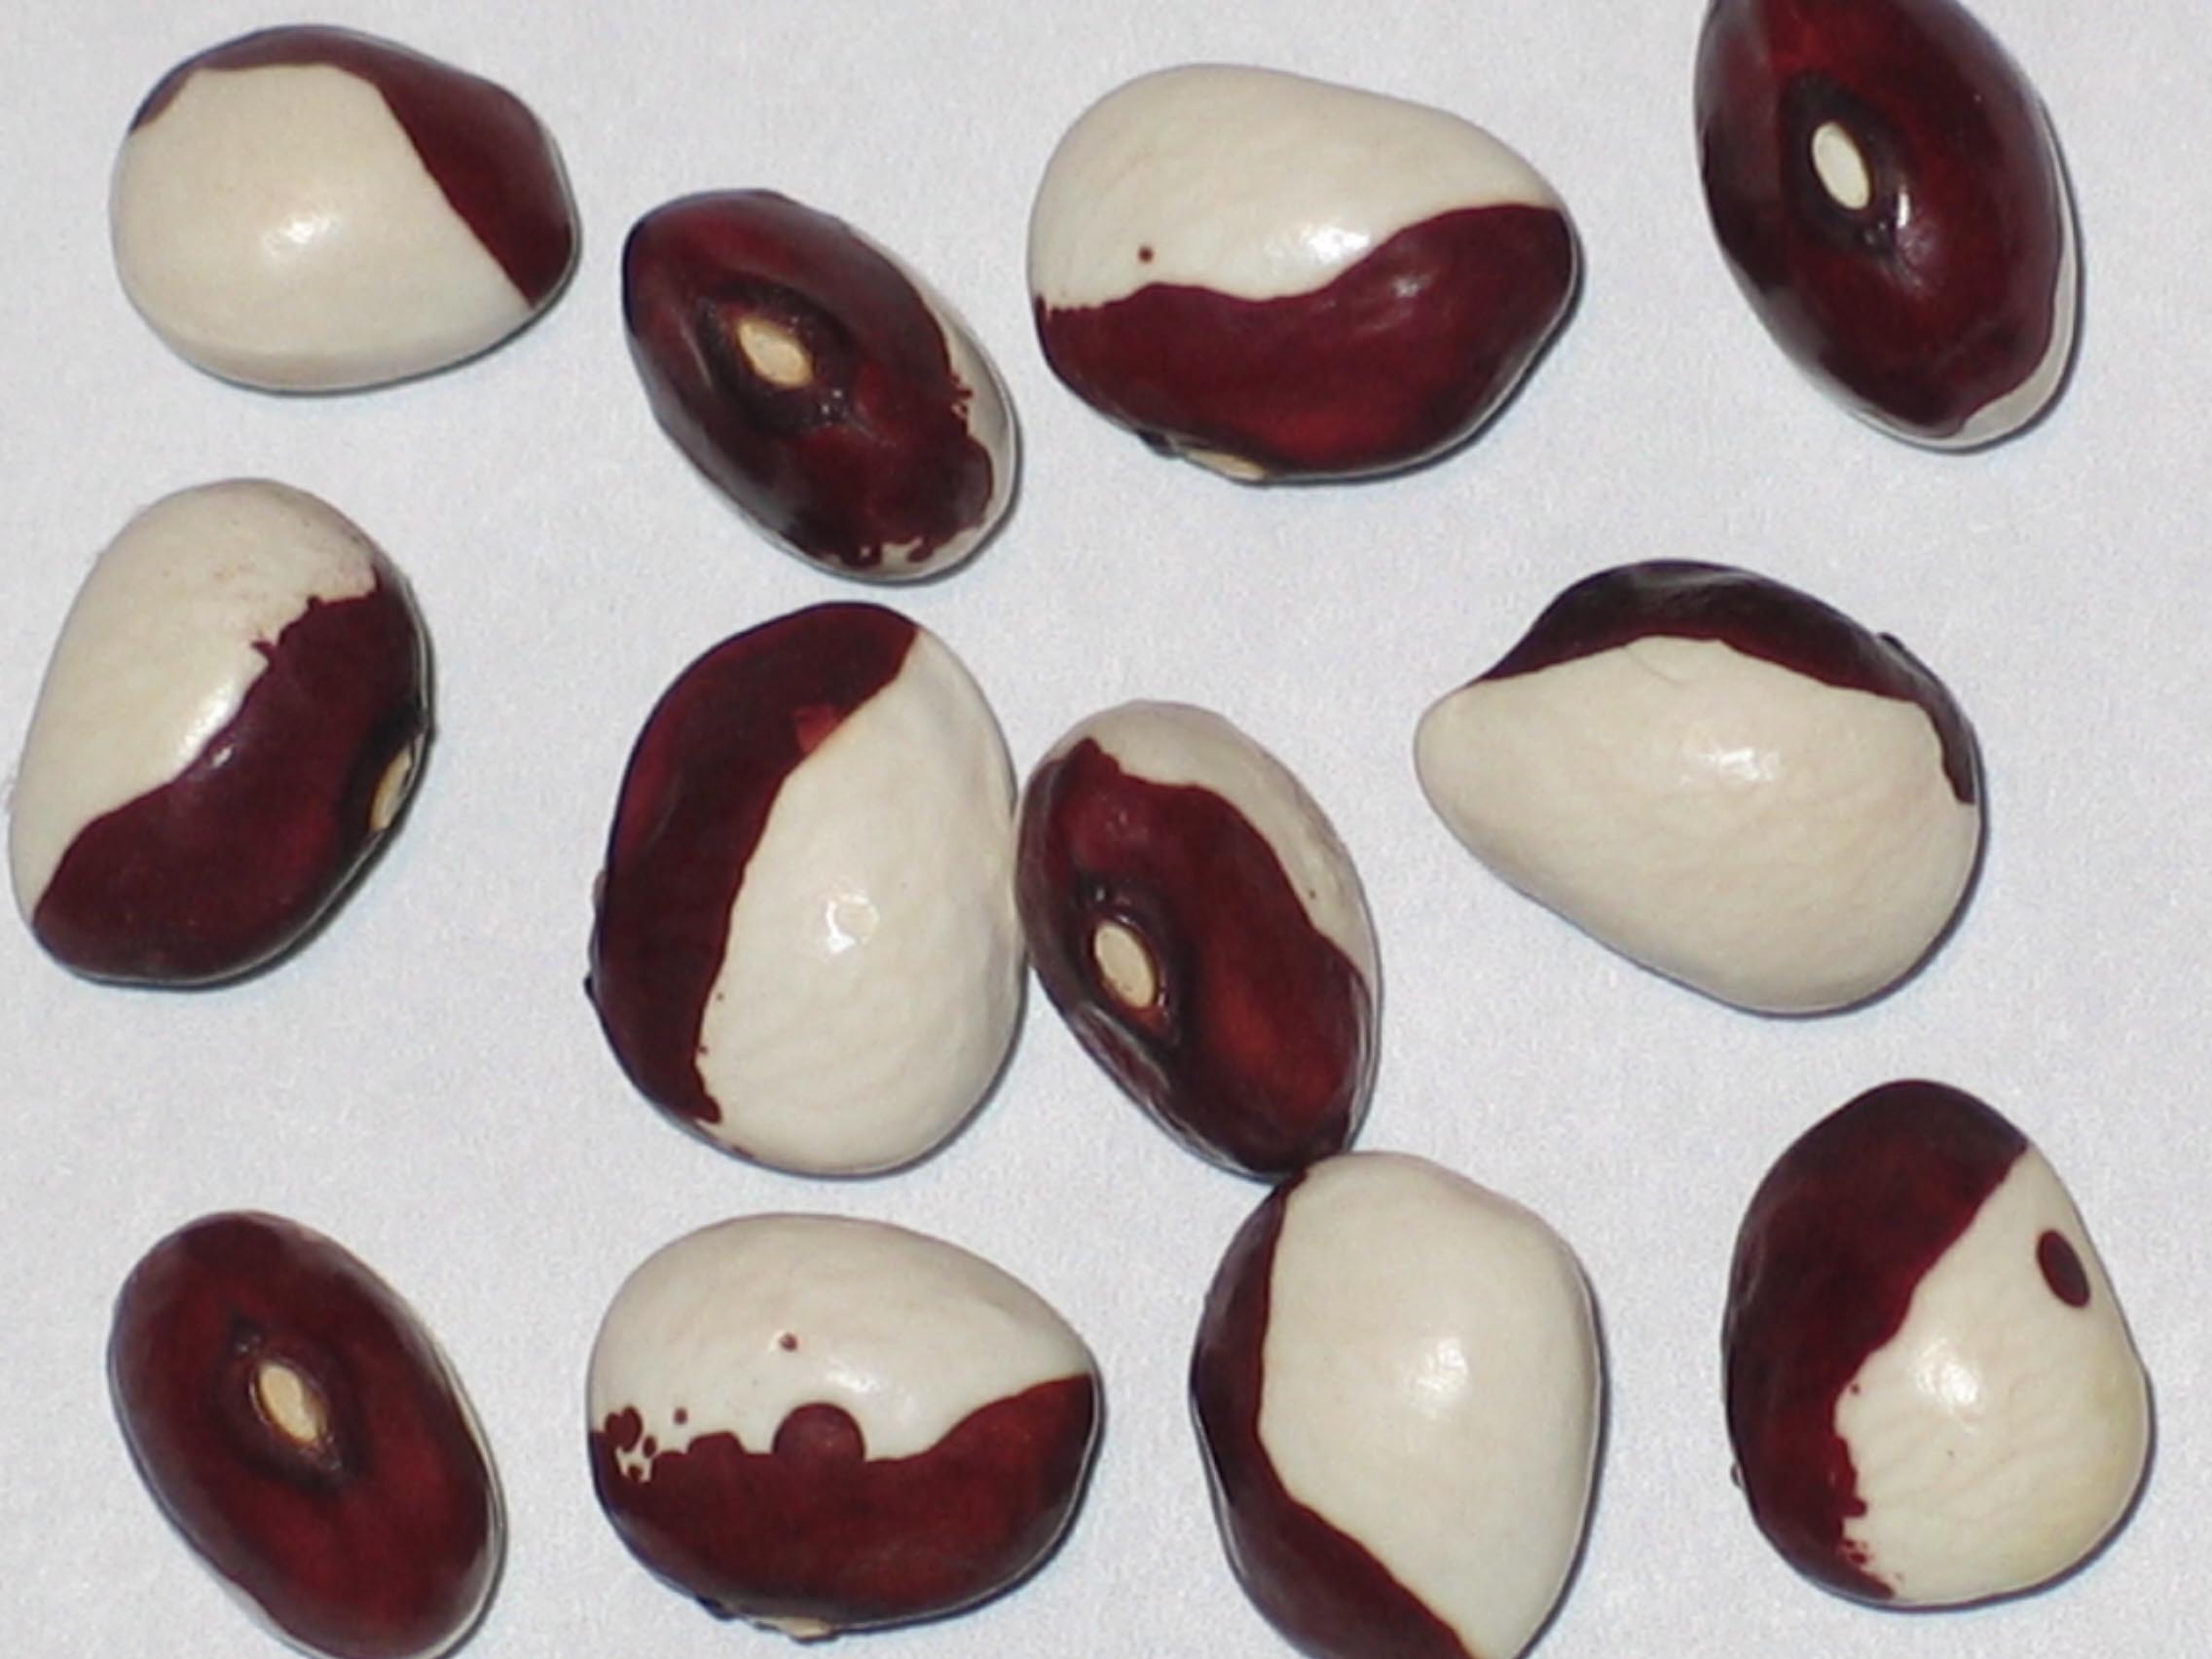 image of Bobolink beans